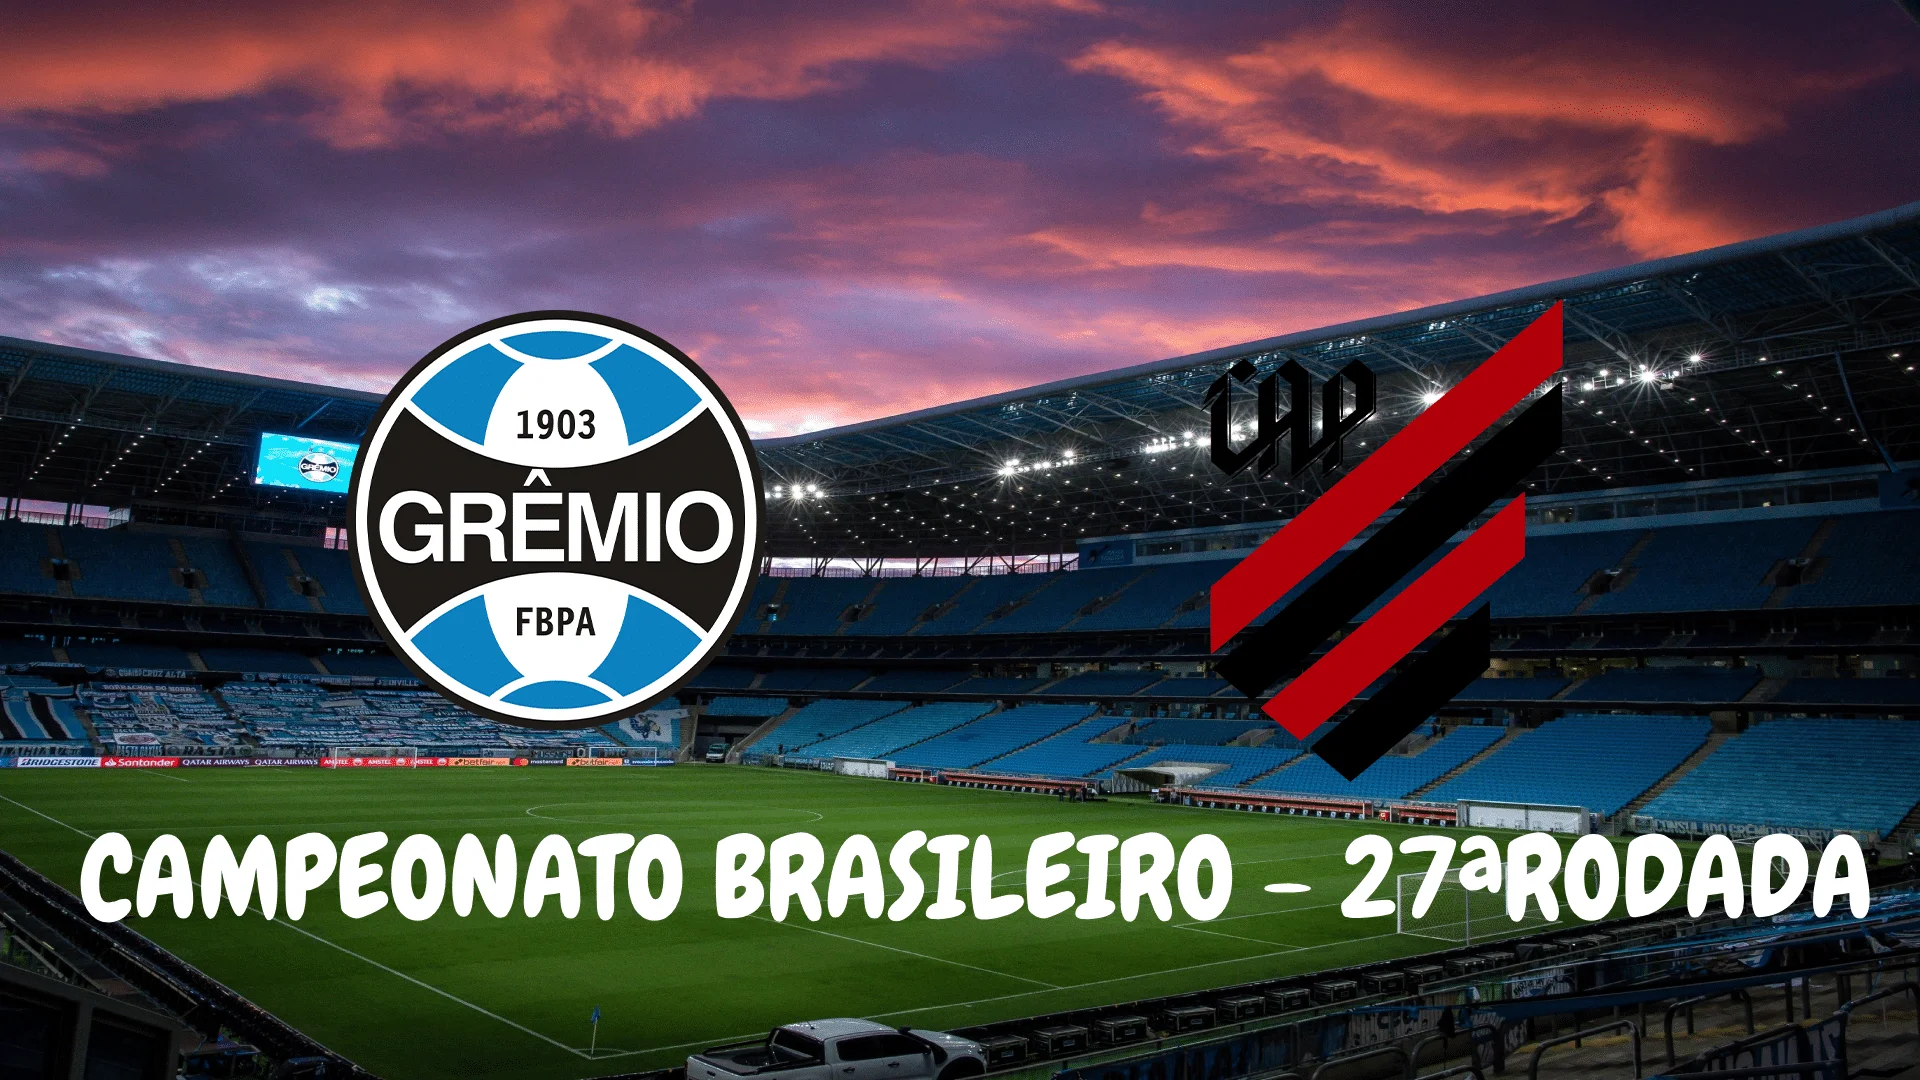 Grêmio x Caxias: Uma rivalidade histórica no futebol gaúcho